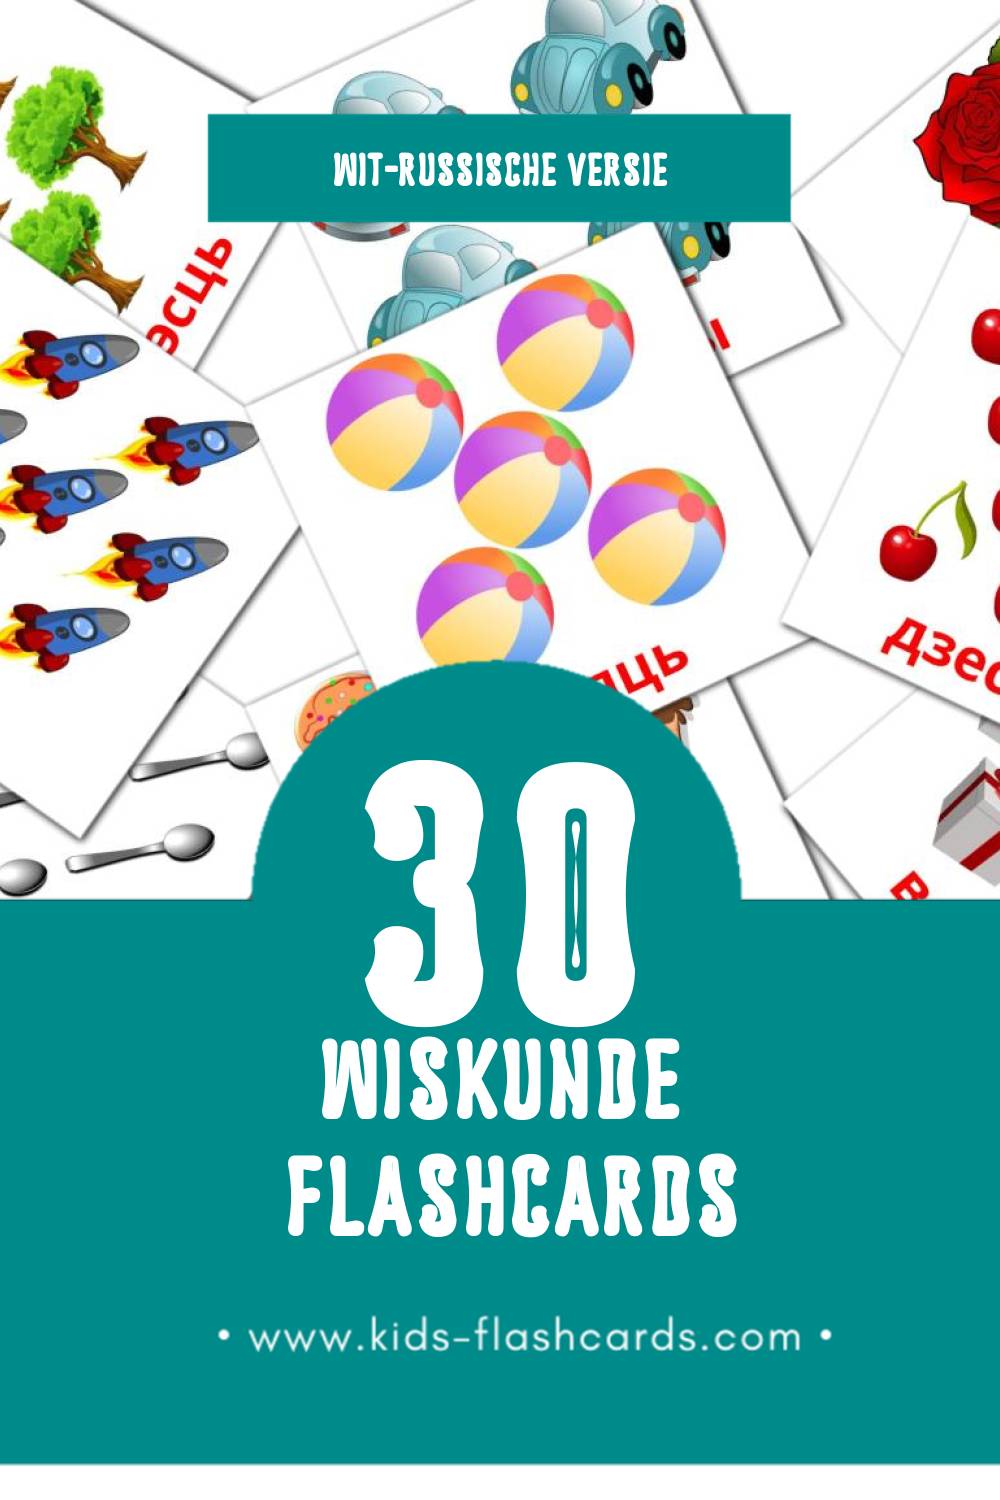 Visuele Matemáticas Flashcards voor Kleuters (10 kaarten in het Wit-russisch)